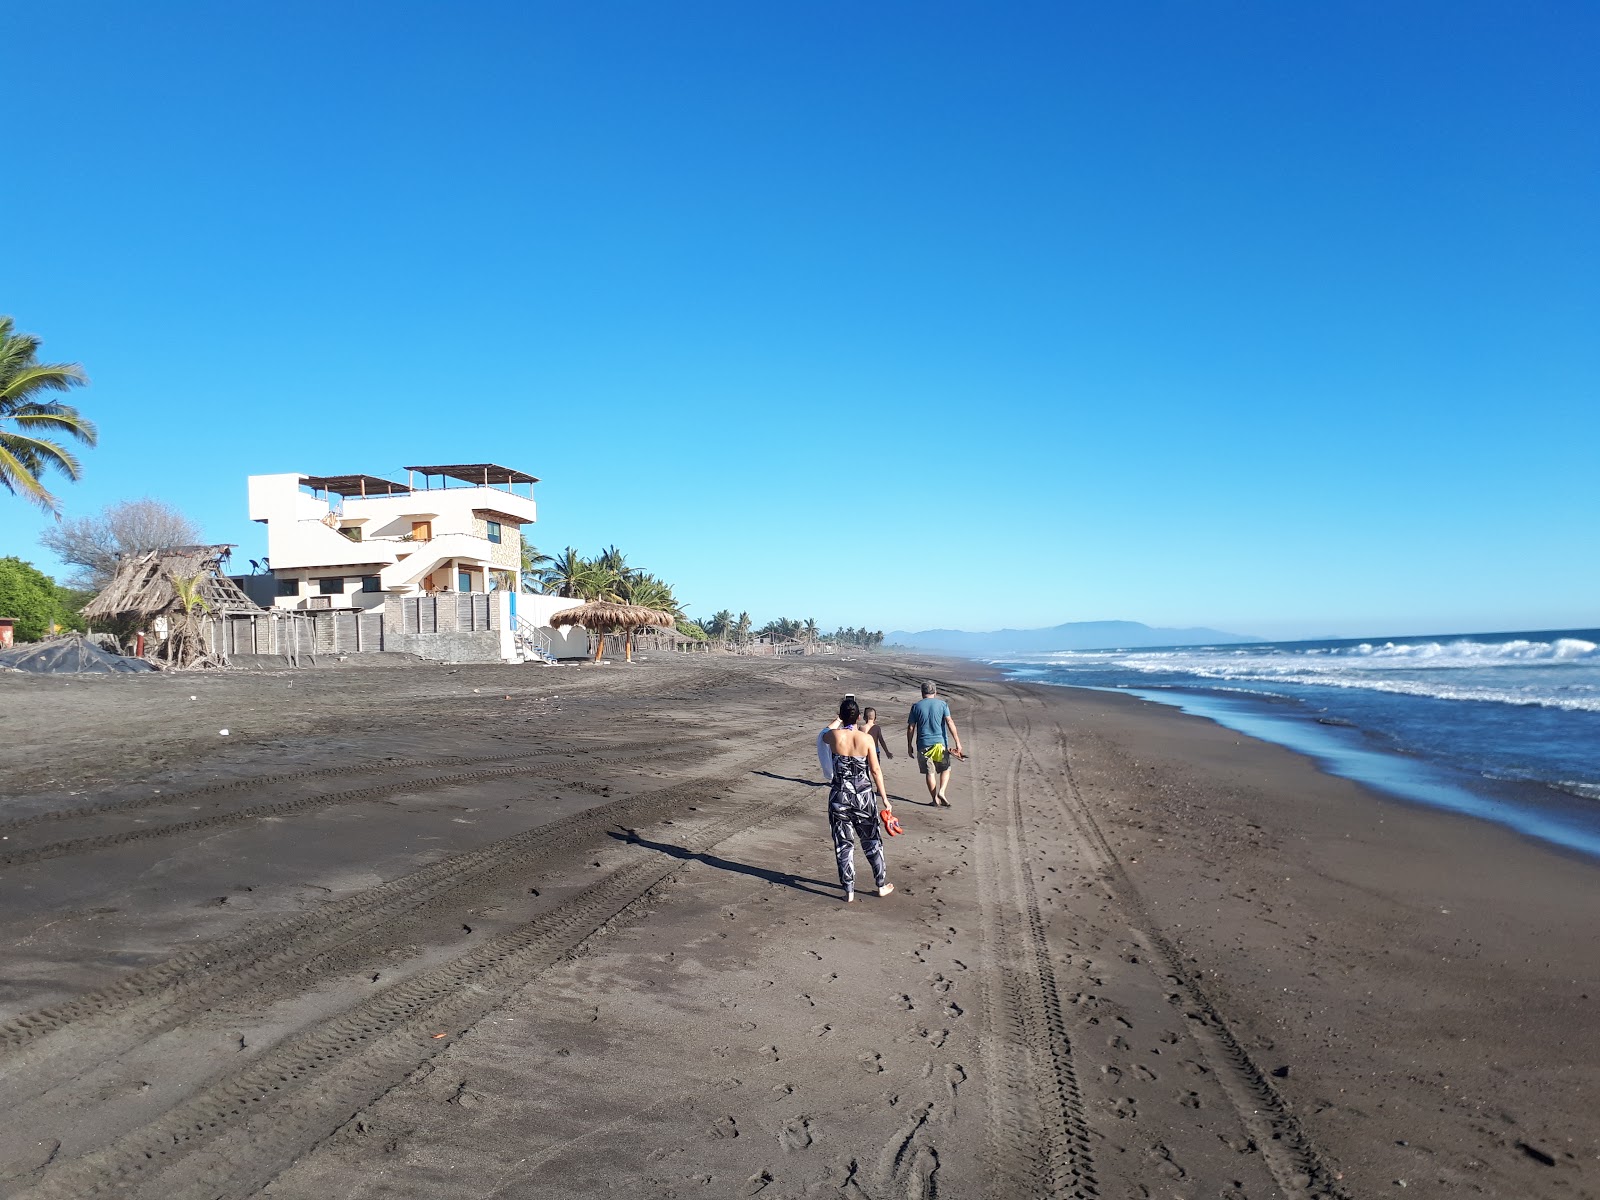 Foto de Playa El Real com areia marrom superfície